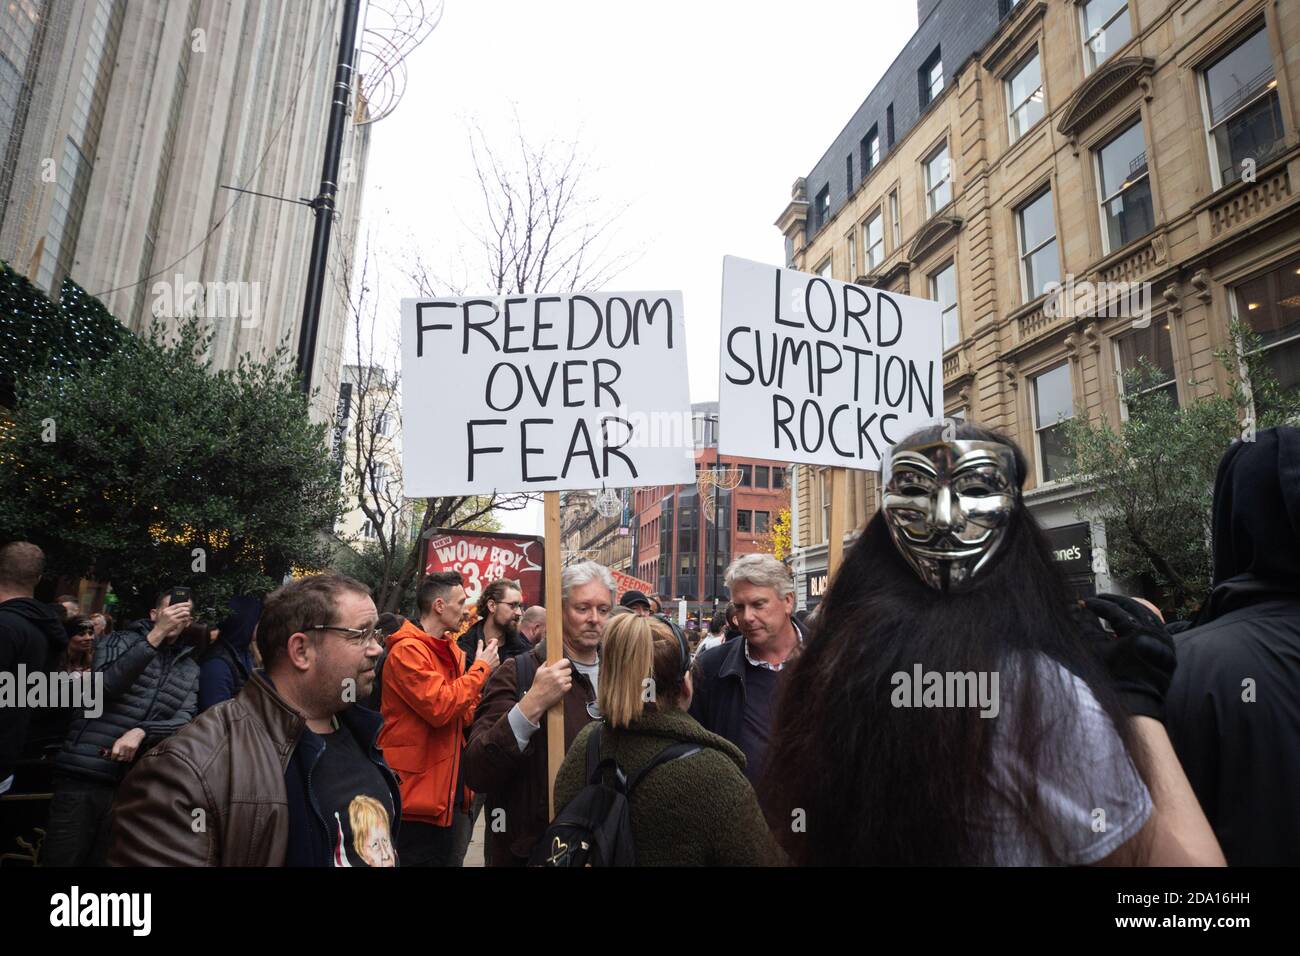 Affiches « liberté sur la peur » et « Lord Sumption Rocks » sur le Manifestation anti-verrouillage Manchester 08-11-2020 Banque D'Images